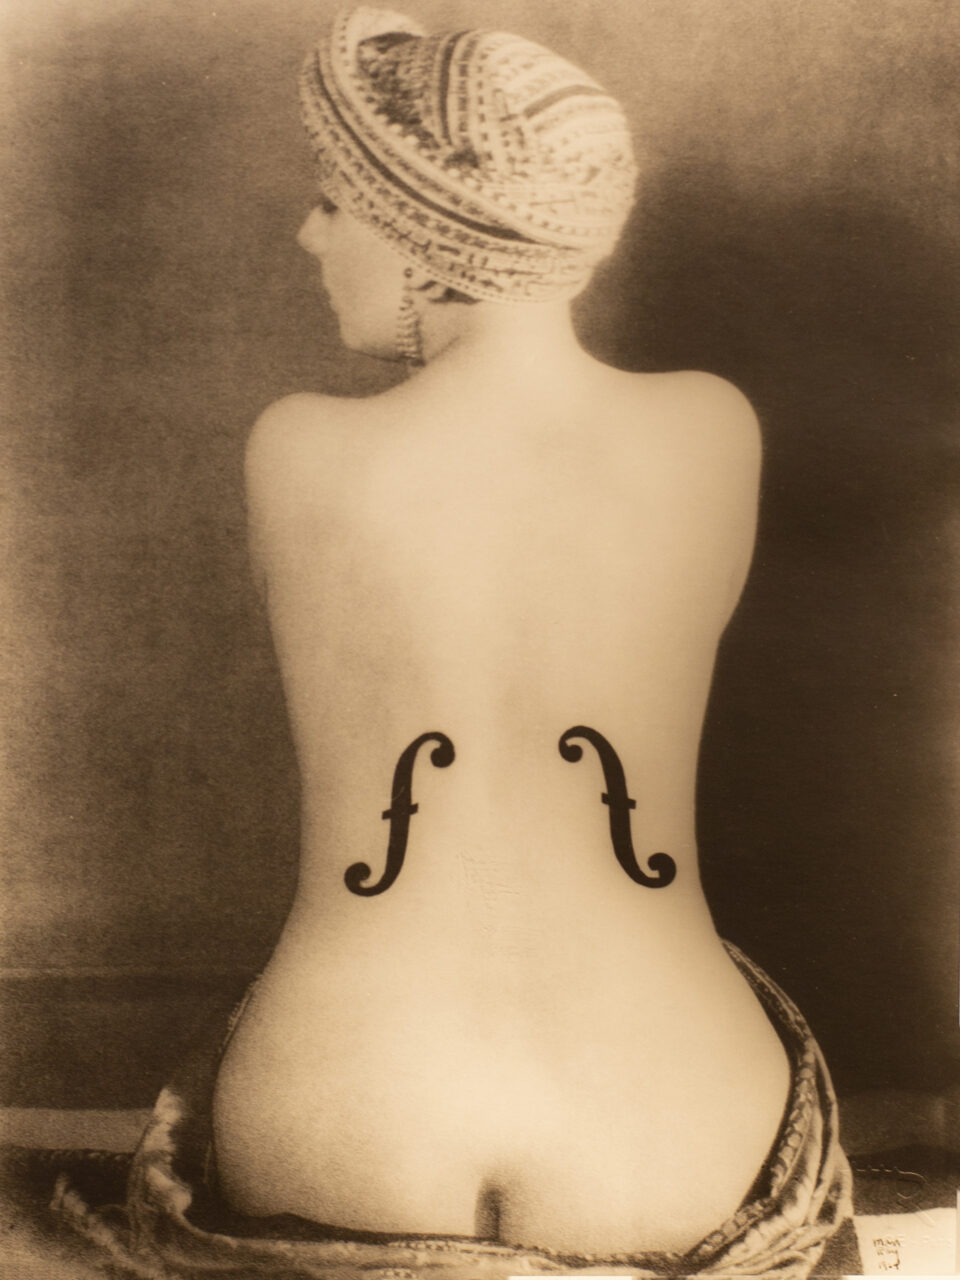 Fotografia “Le violon d'Ingres” di Man Ray.